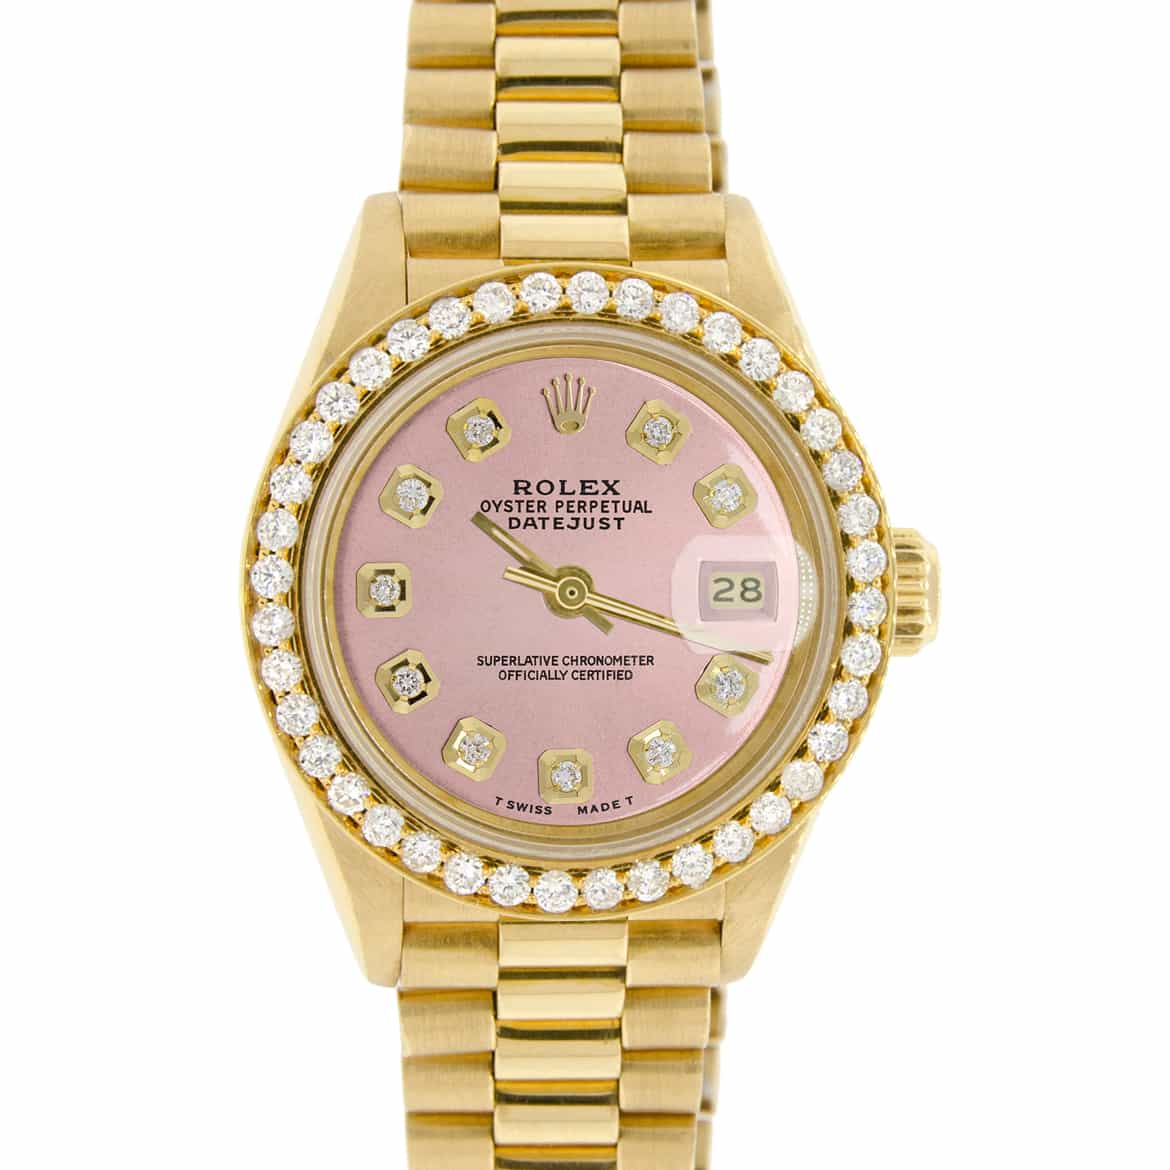 Watches  Rolex watches women, Rolex, Gold watches women